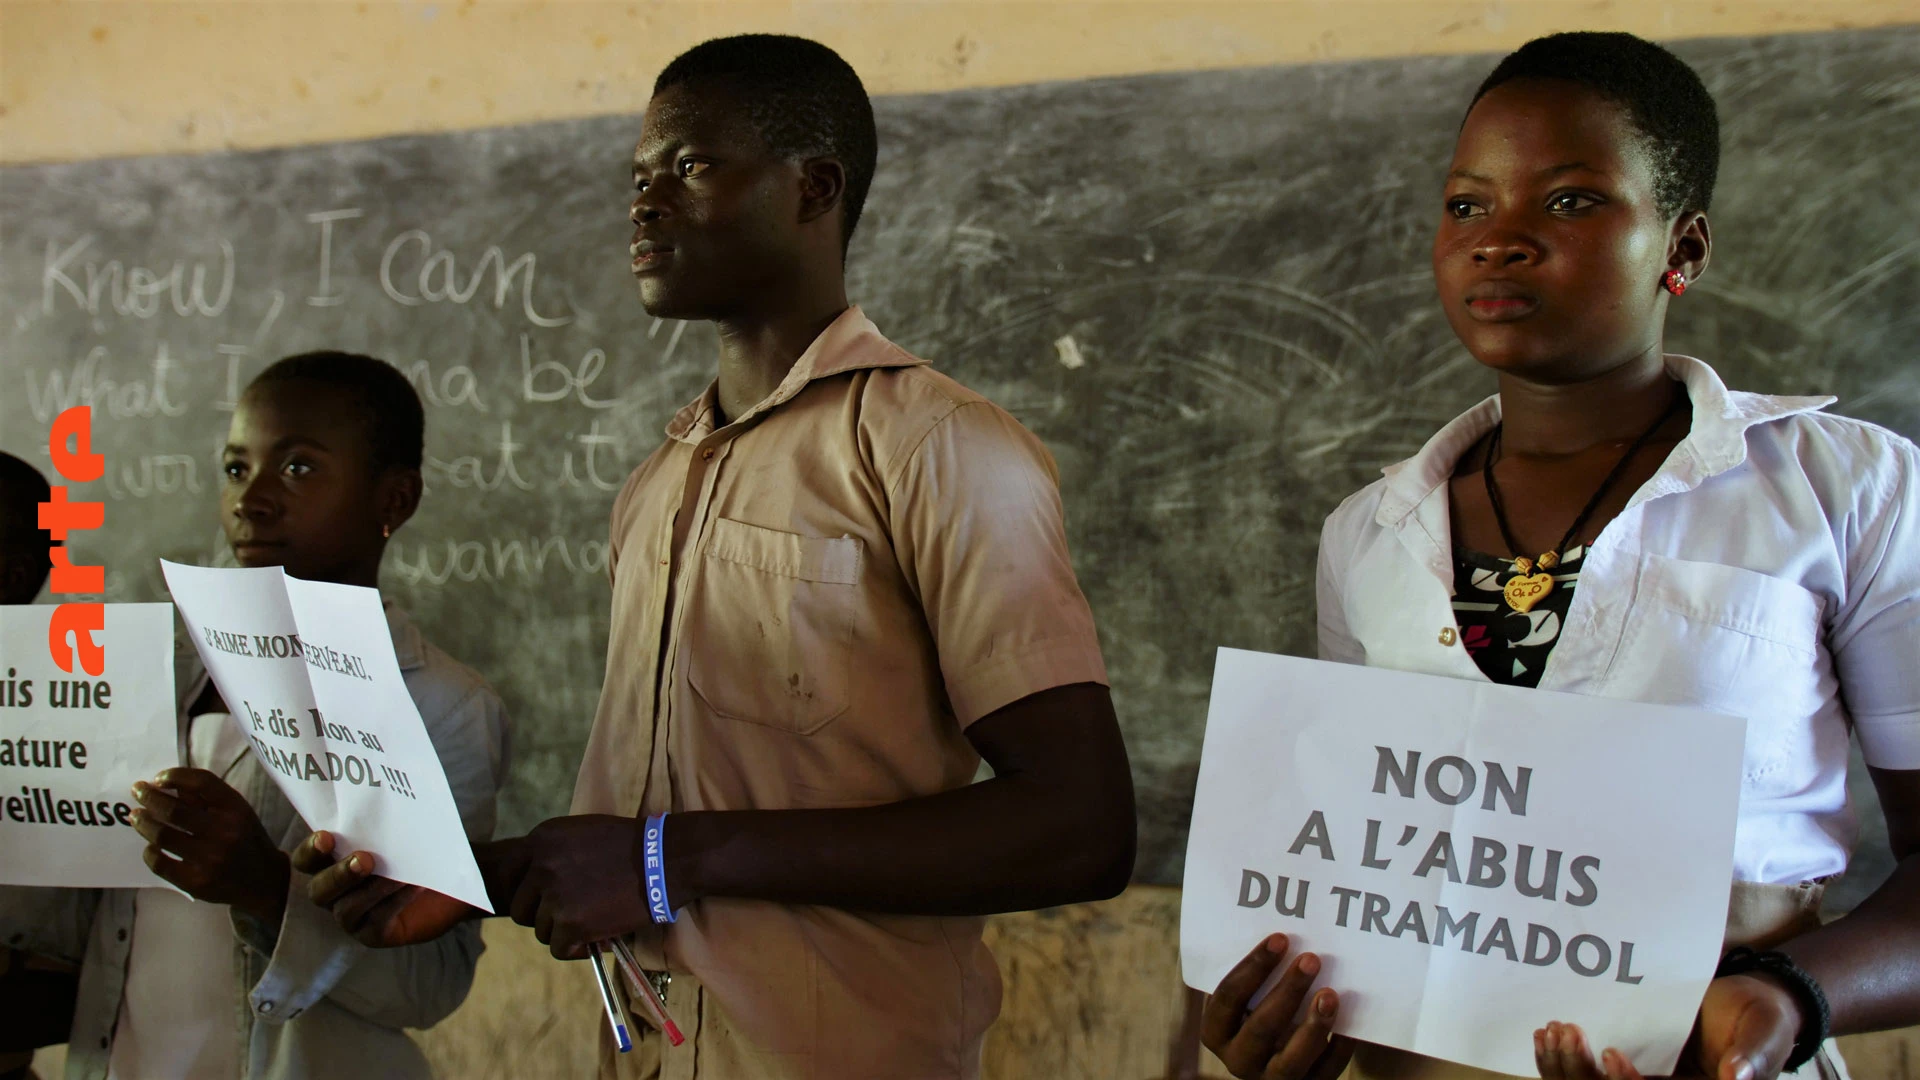 Le Tramadol : Cette "drogue des pauvres" qui fait des ravages au Togo